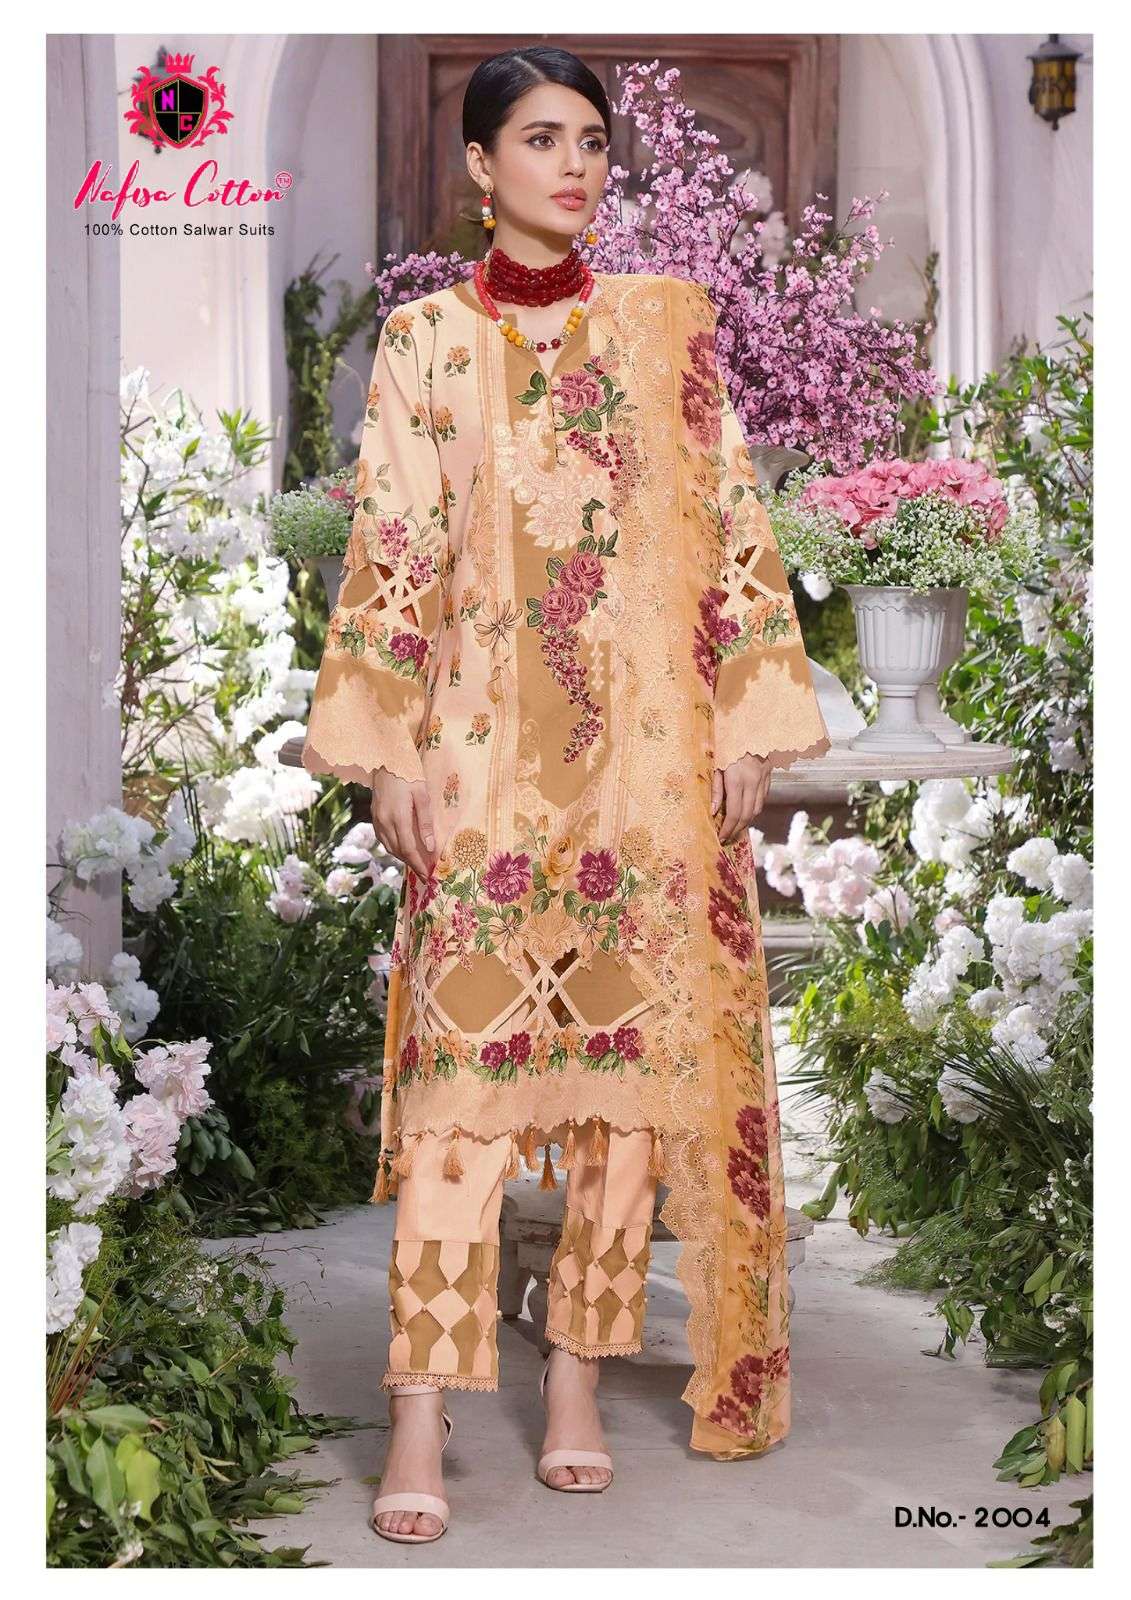 nafisa cotton safina karachi suits vol-2 2001-2006 series latest designe rpakistani suit wholesaler surat gujarat